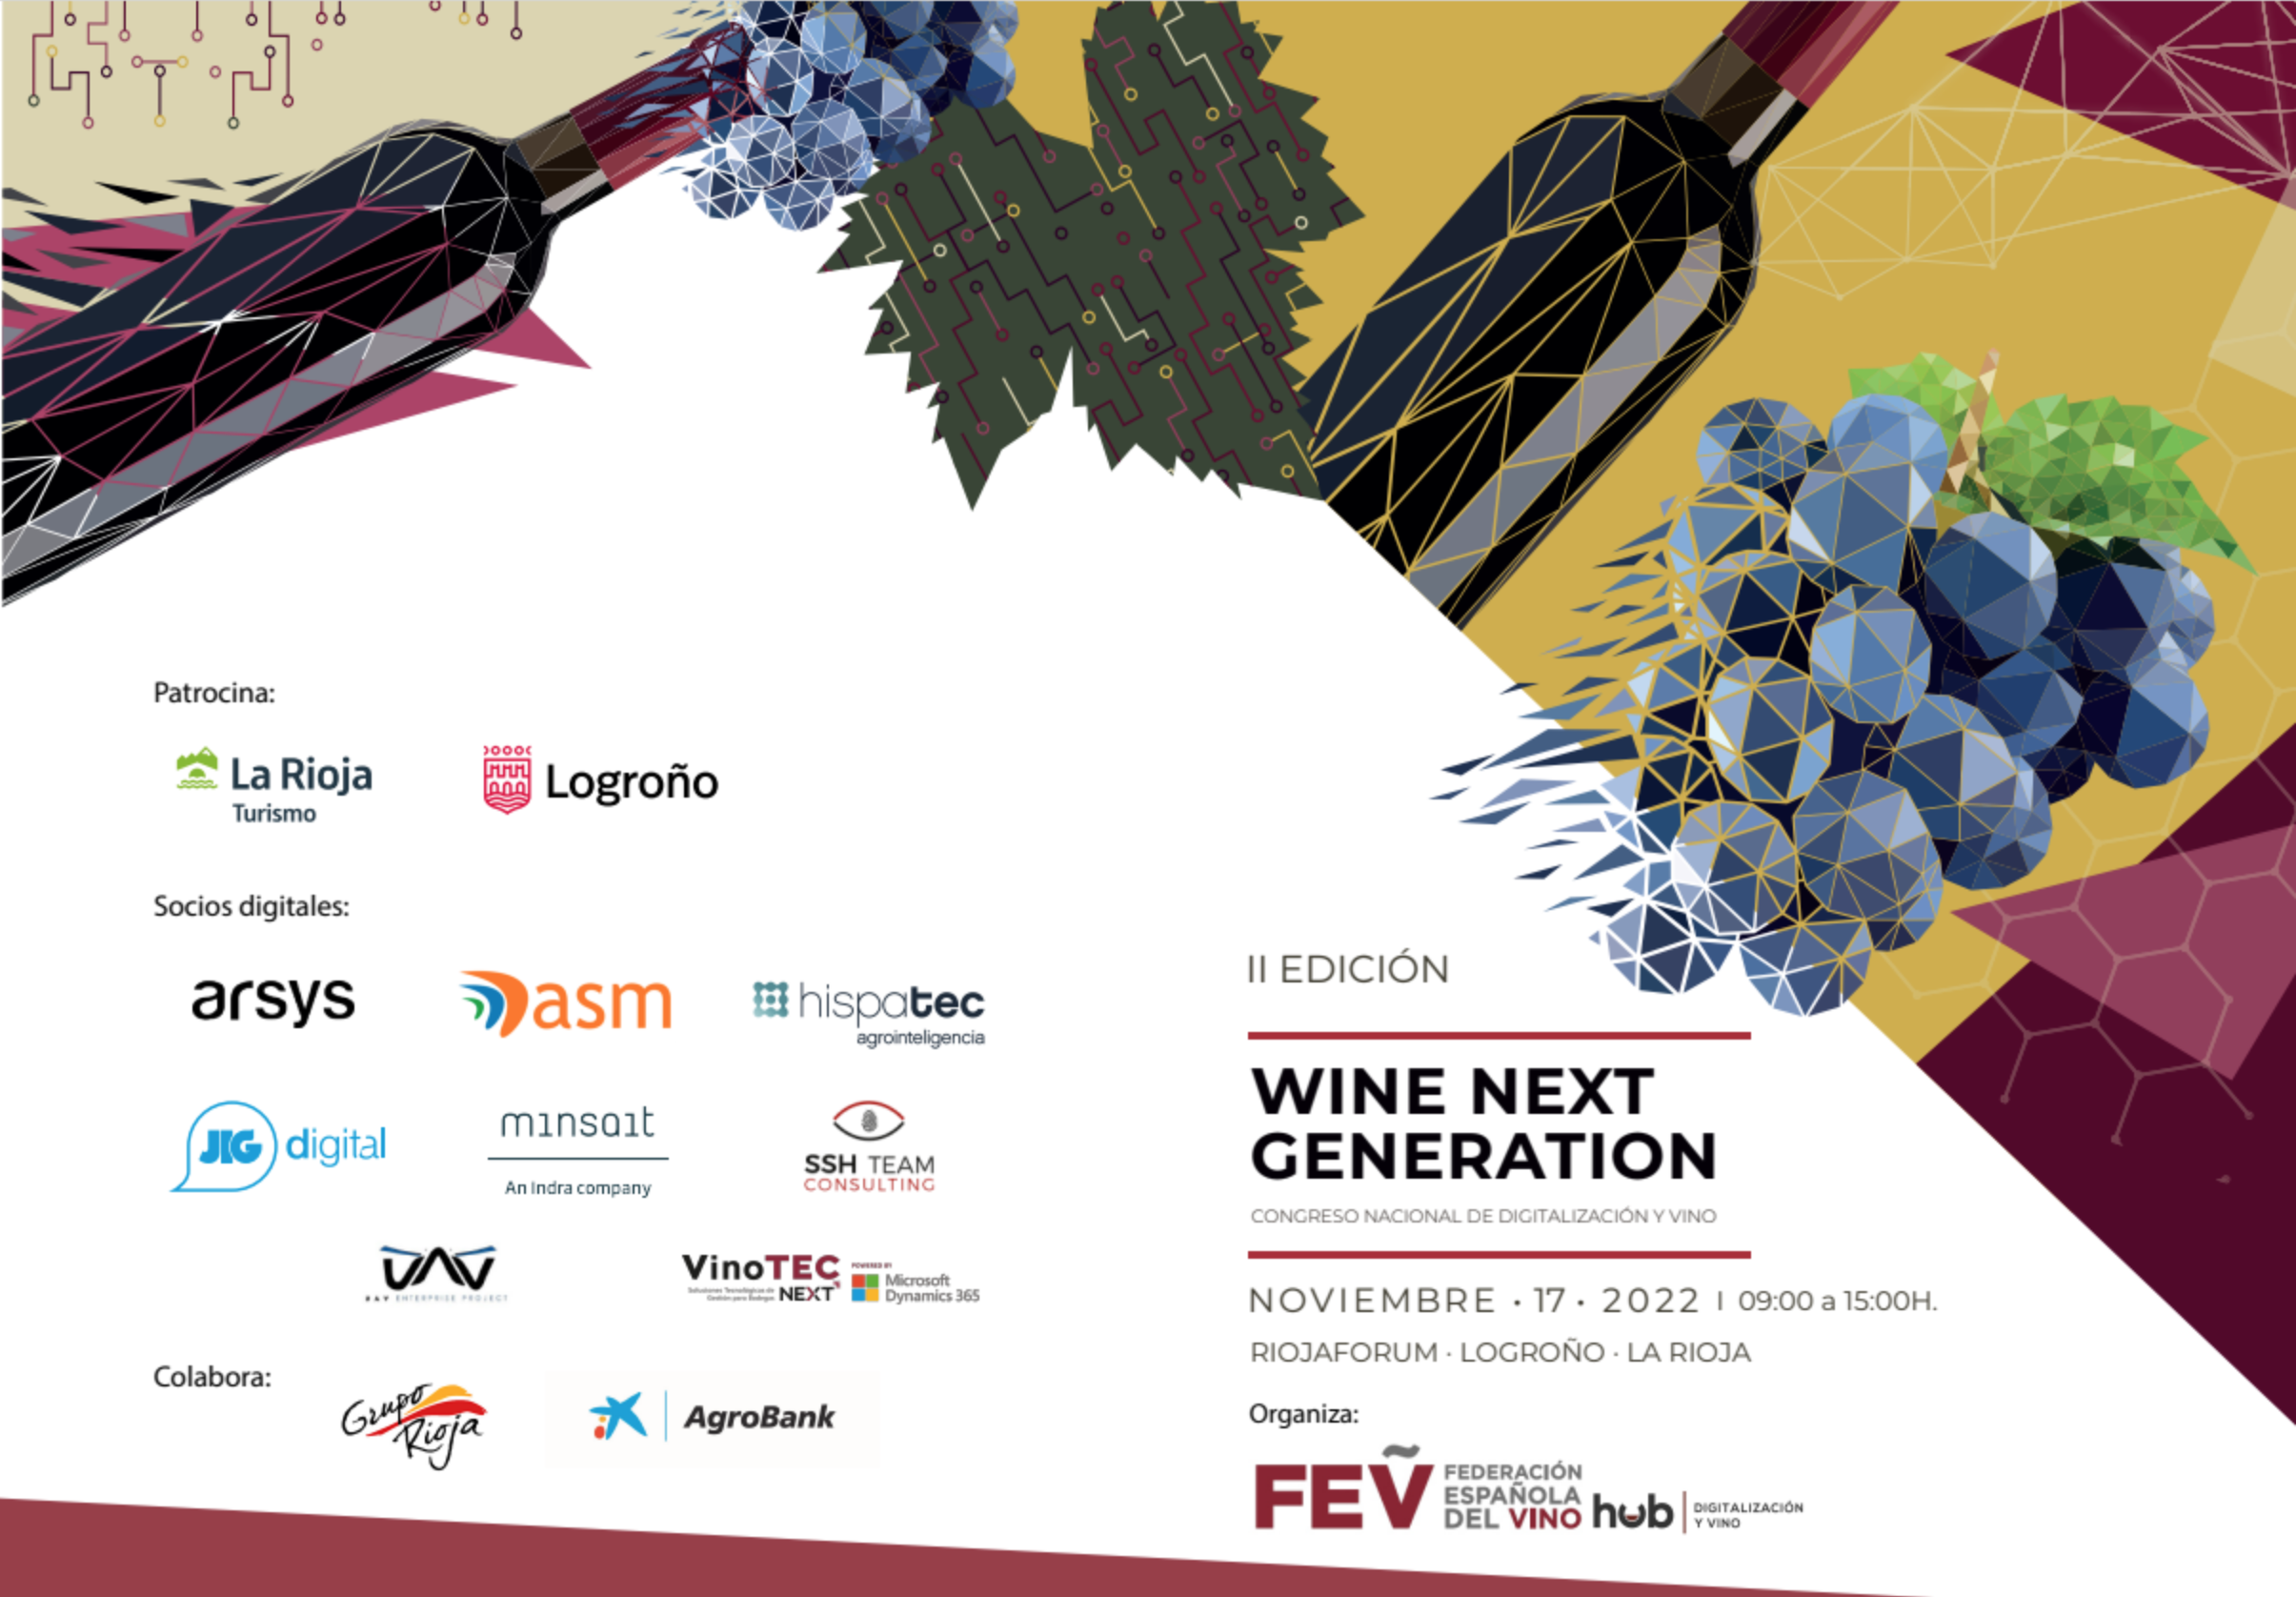 wine next generation rioja forum logroño taste of rioja agencia digital publicidad doca rioja